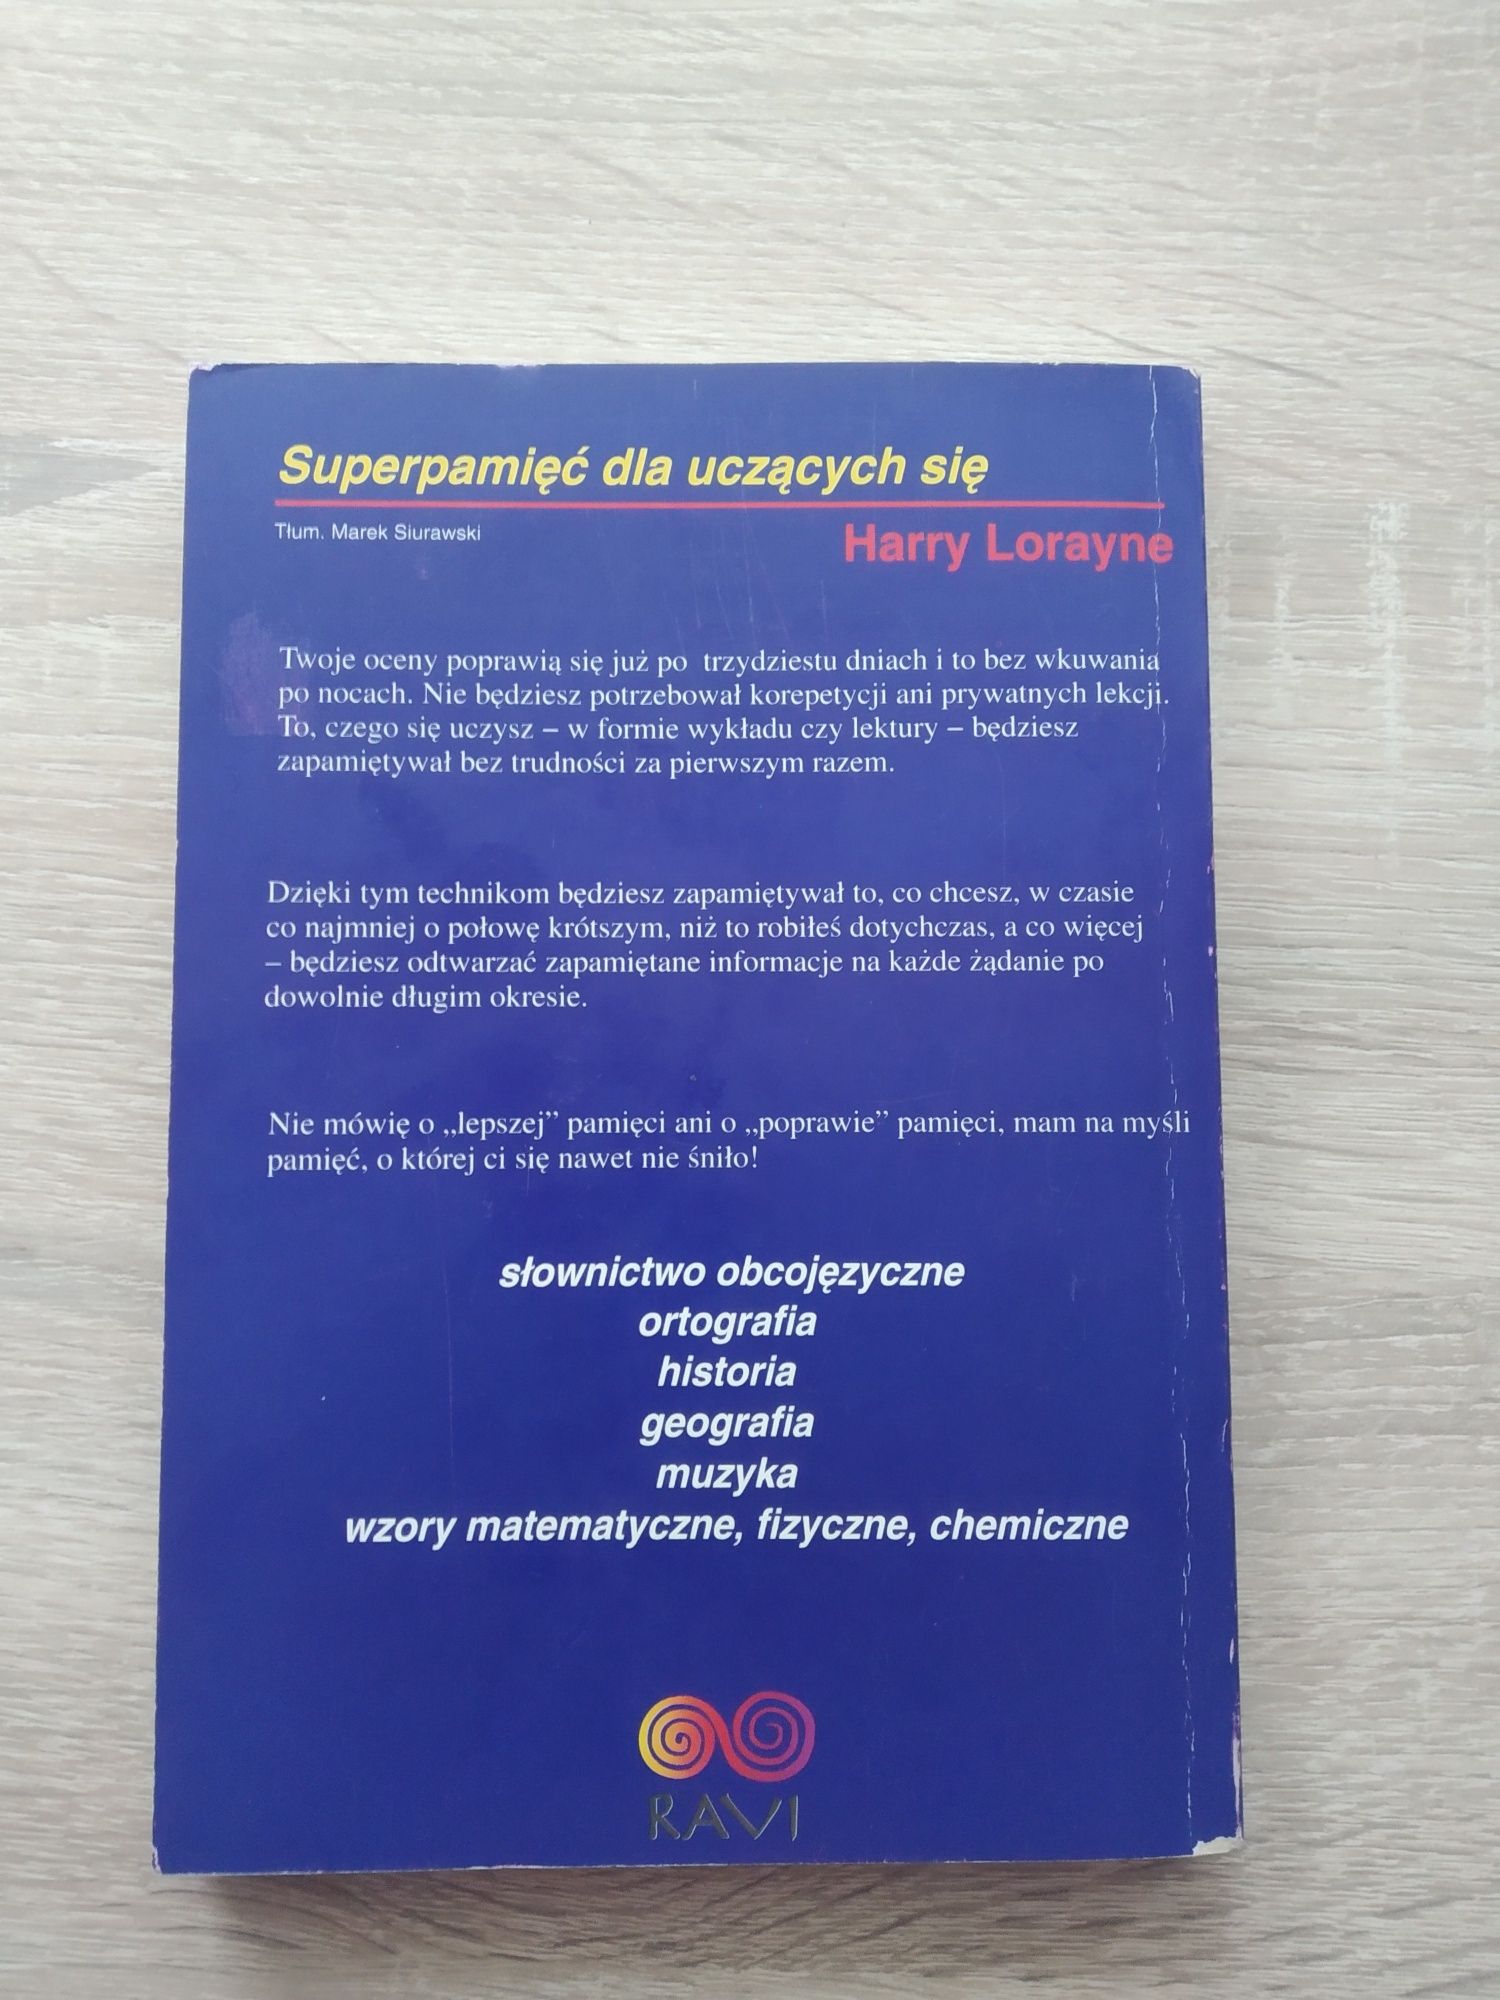 Książka: Superpamięć dla uczących się, Harry Lorayne